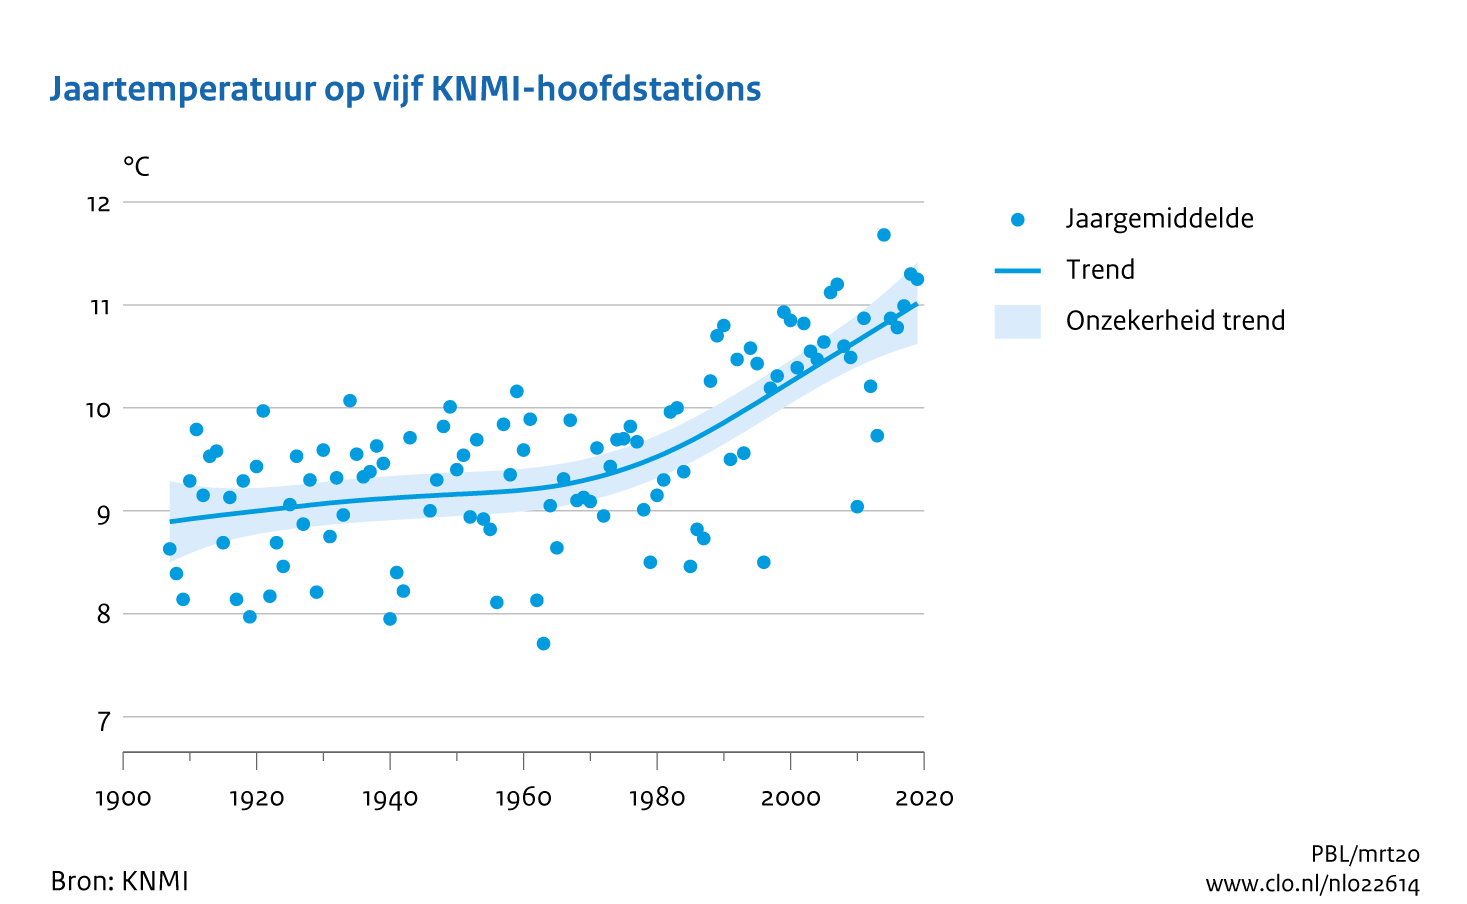 Figuur jaargemiddelde temperatuur midden Nederland. In de rest van de tekst wordt deze figuur uitgebreider uitgelegd.